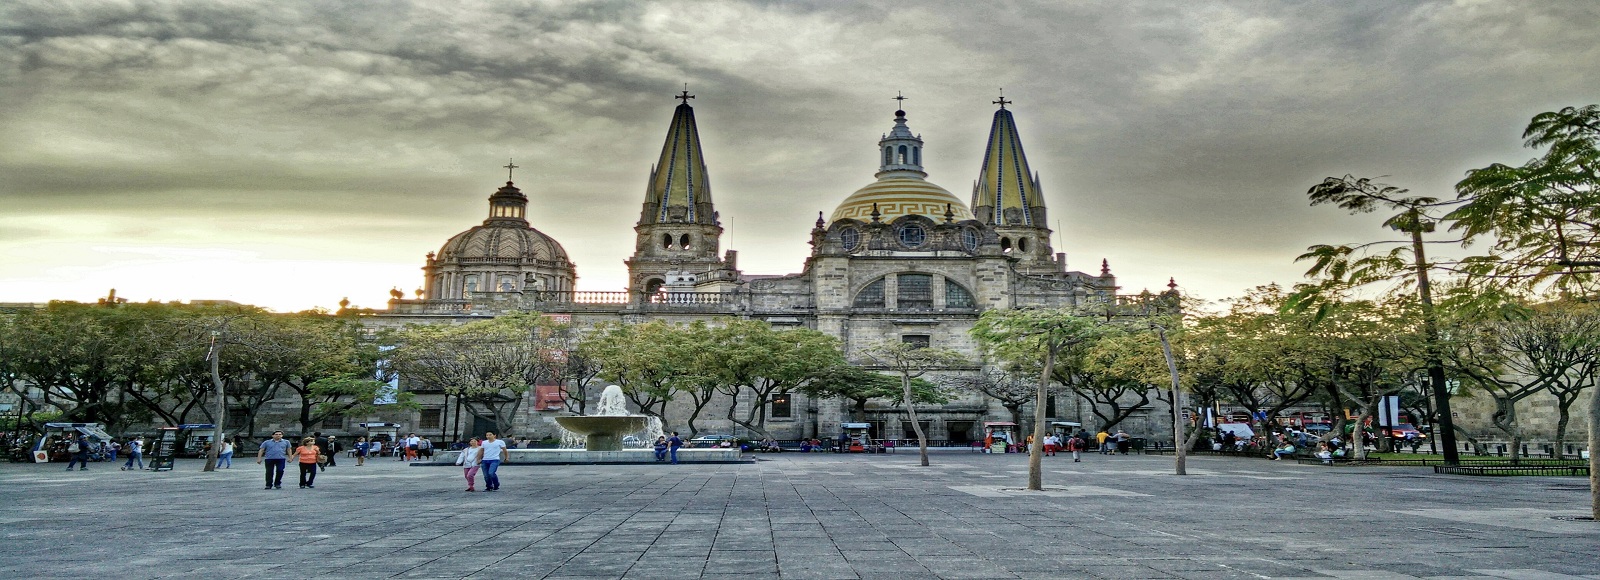 Ofertas de Traslados en Guadalajara. Traslados económicos en Guadalajara 